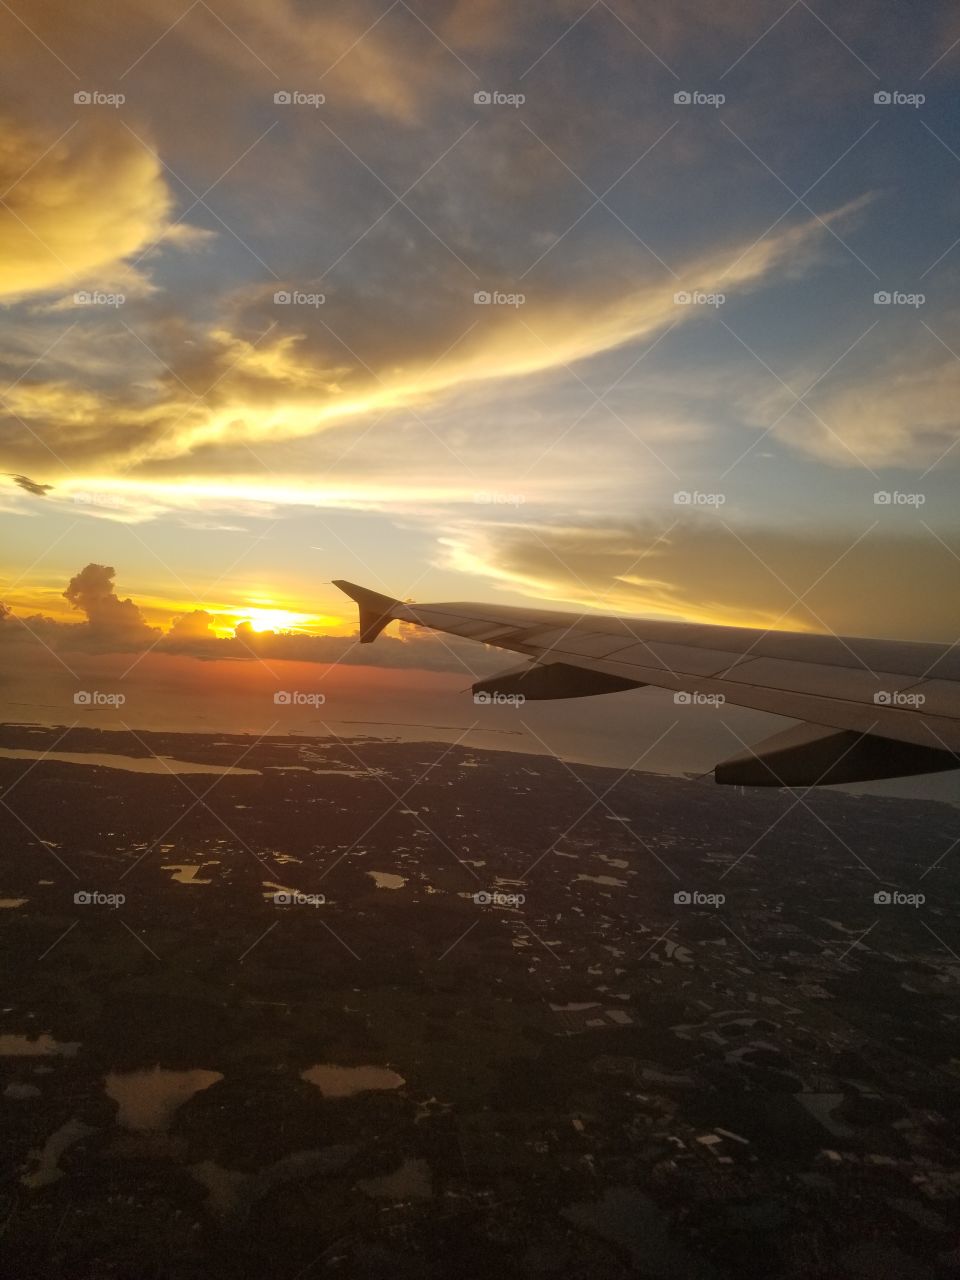 Tampa Bay, Florida at dawn